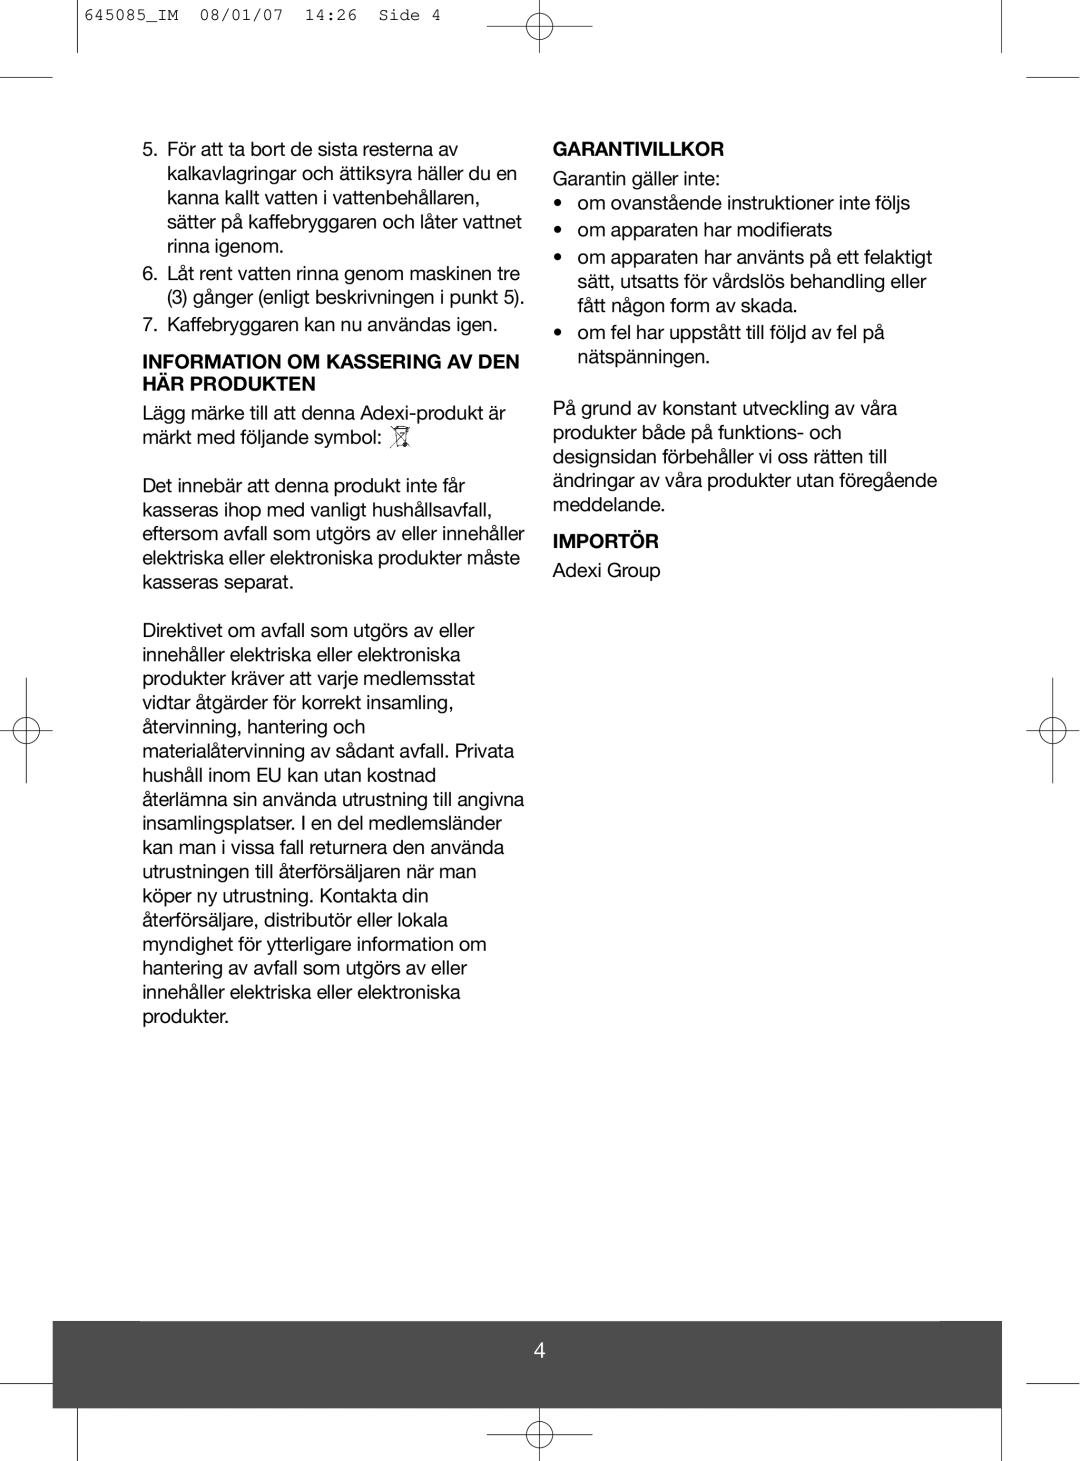 Butler 645-260 manual Information Om Kassering Av Den Här Produkten, Garantivillkor, Importör 